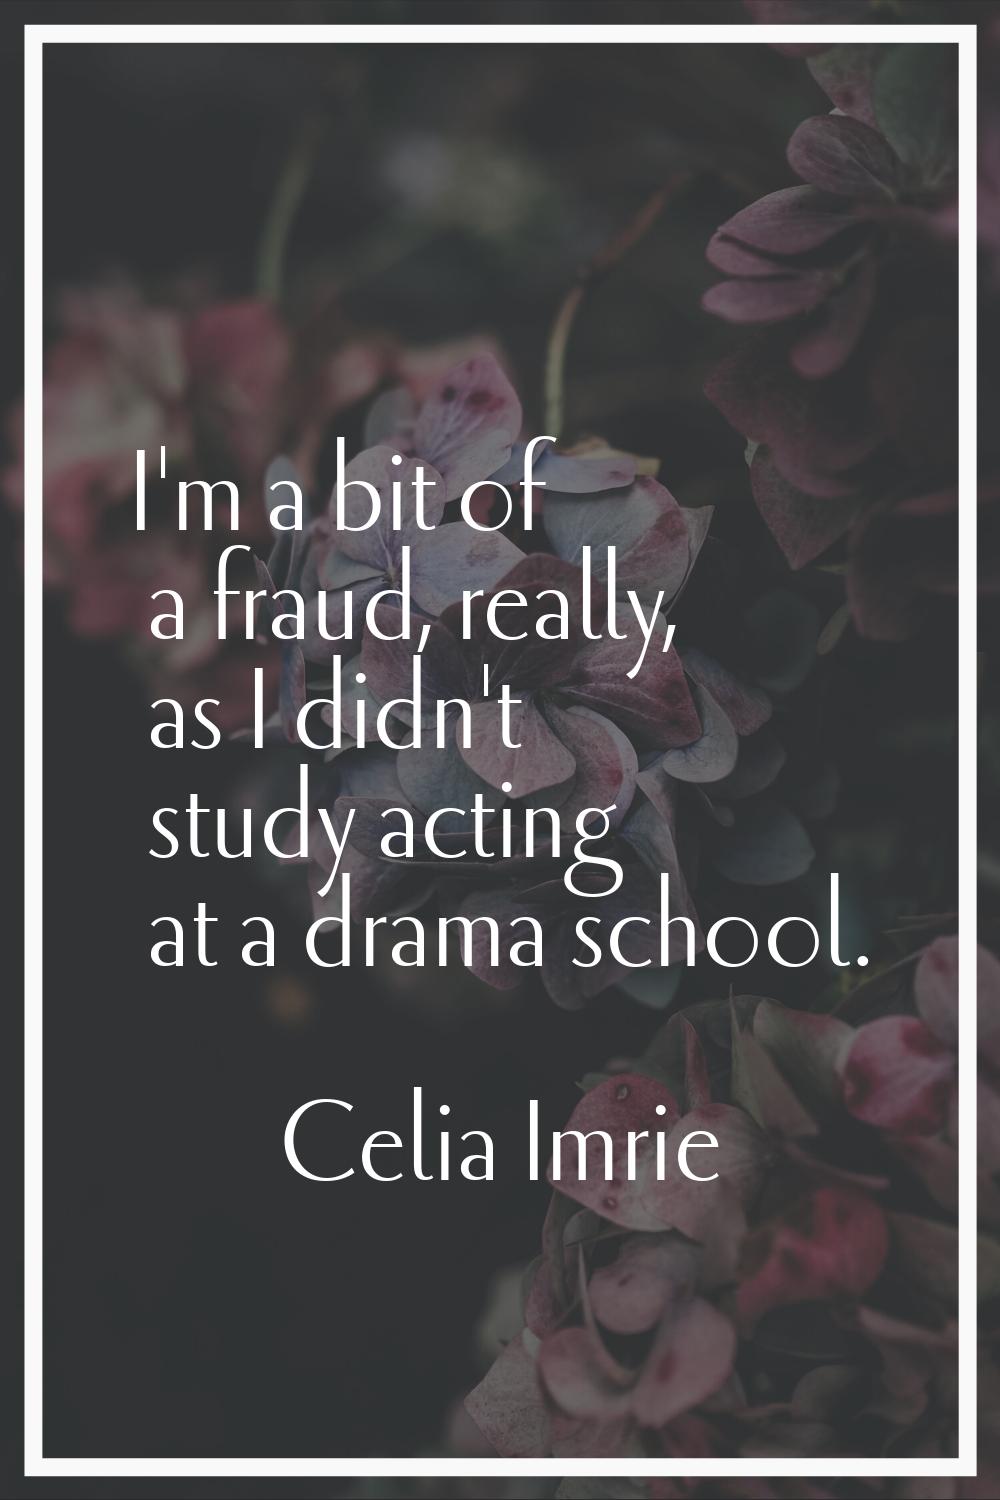 I'm a bit of a fraud, really, as I didn't study acting at a drama school.